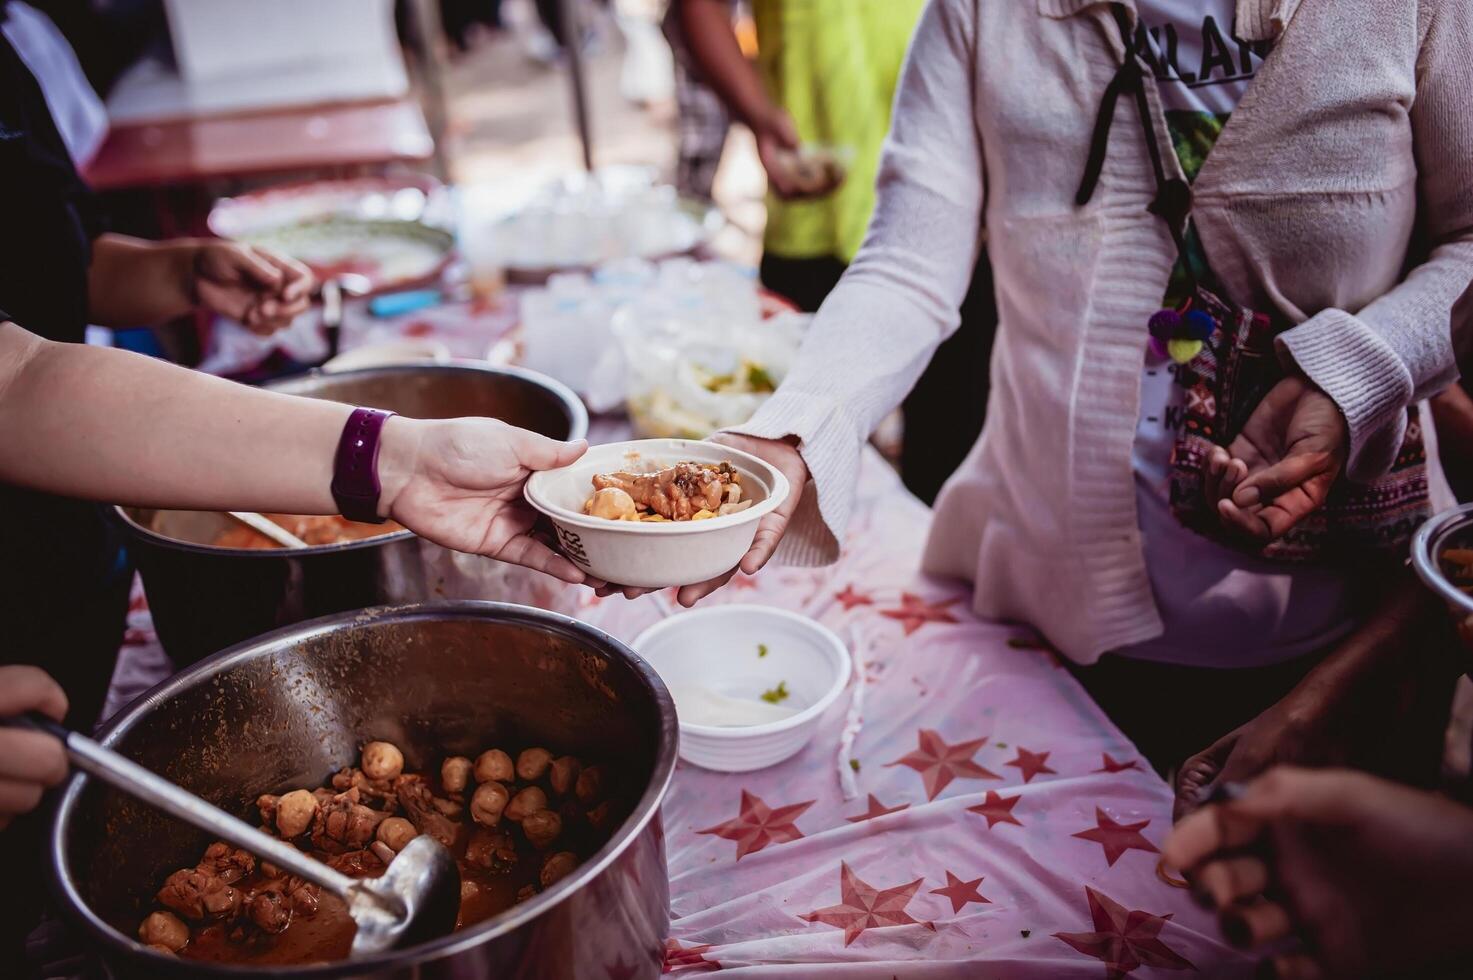 das Hand von das Wanderer erweitert zu erhalten Essen von Spenden. mit Freiwillige schöpfen Essen foto